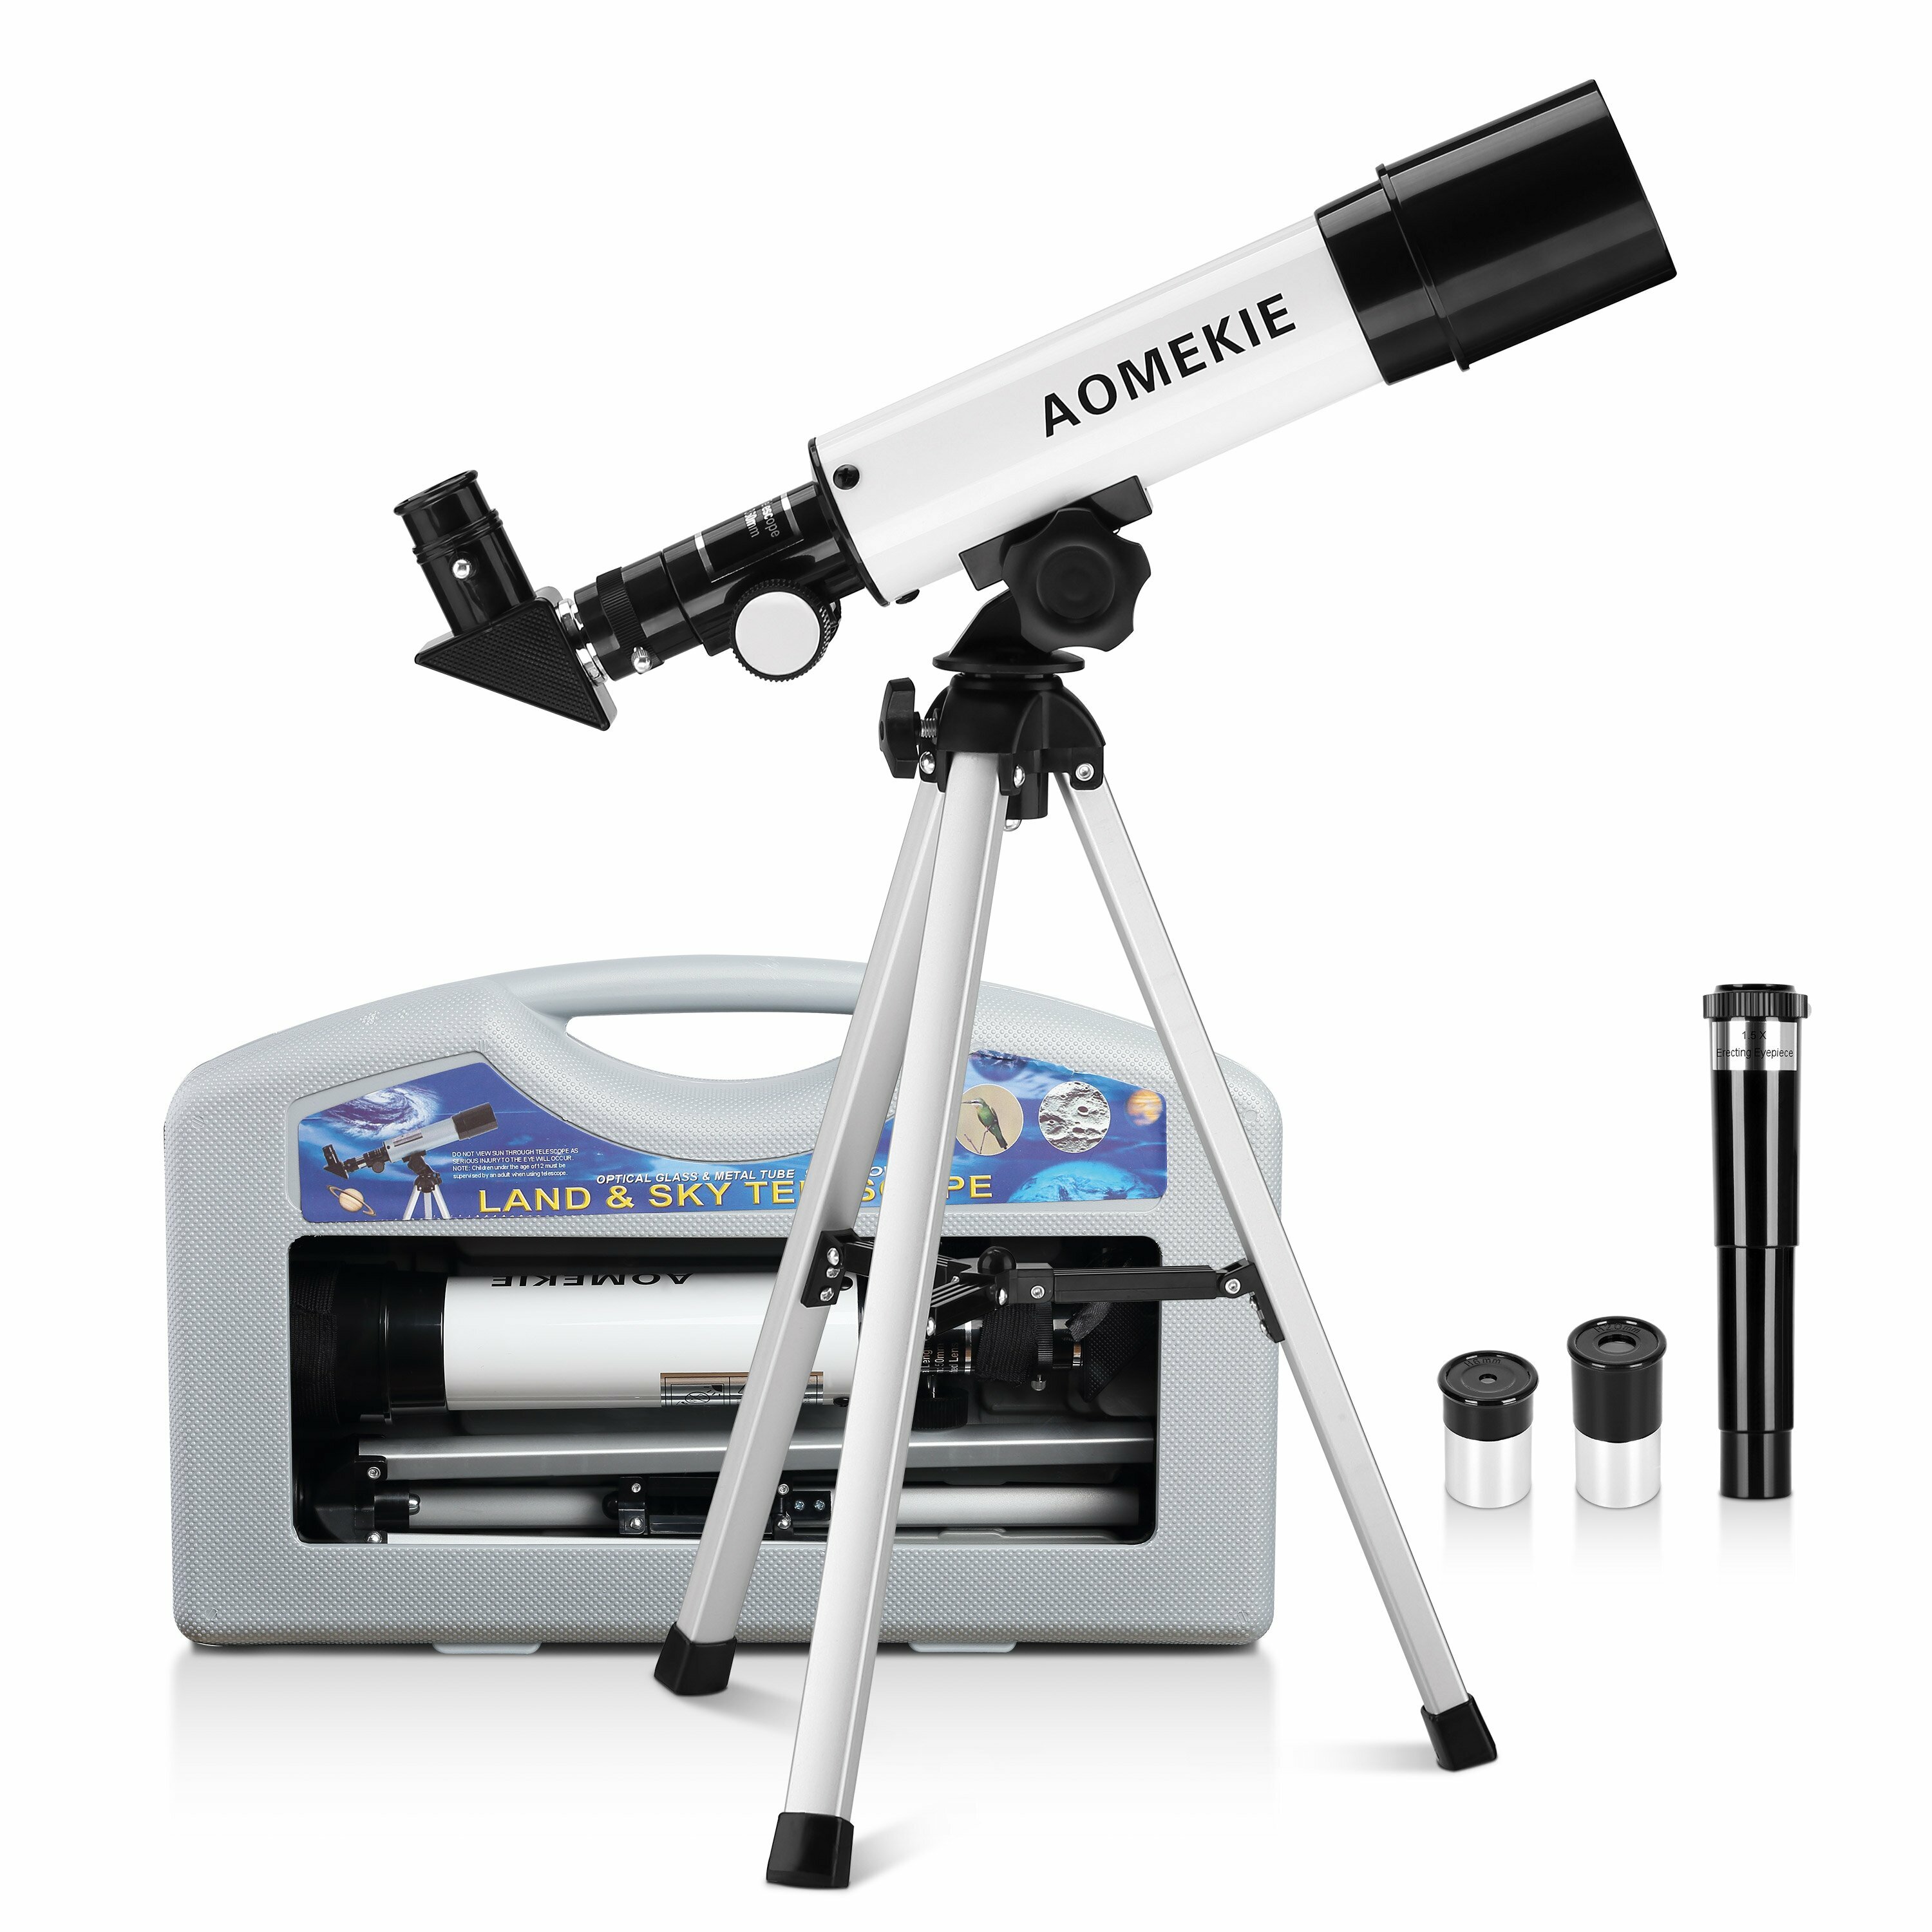 Télescope réfracteur AOMEKIE pour enfants 50/360mm pour débutants en astronomie avec étui de transport, trépied, oculaire redresseur